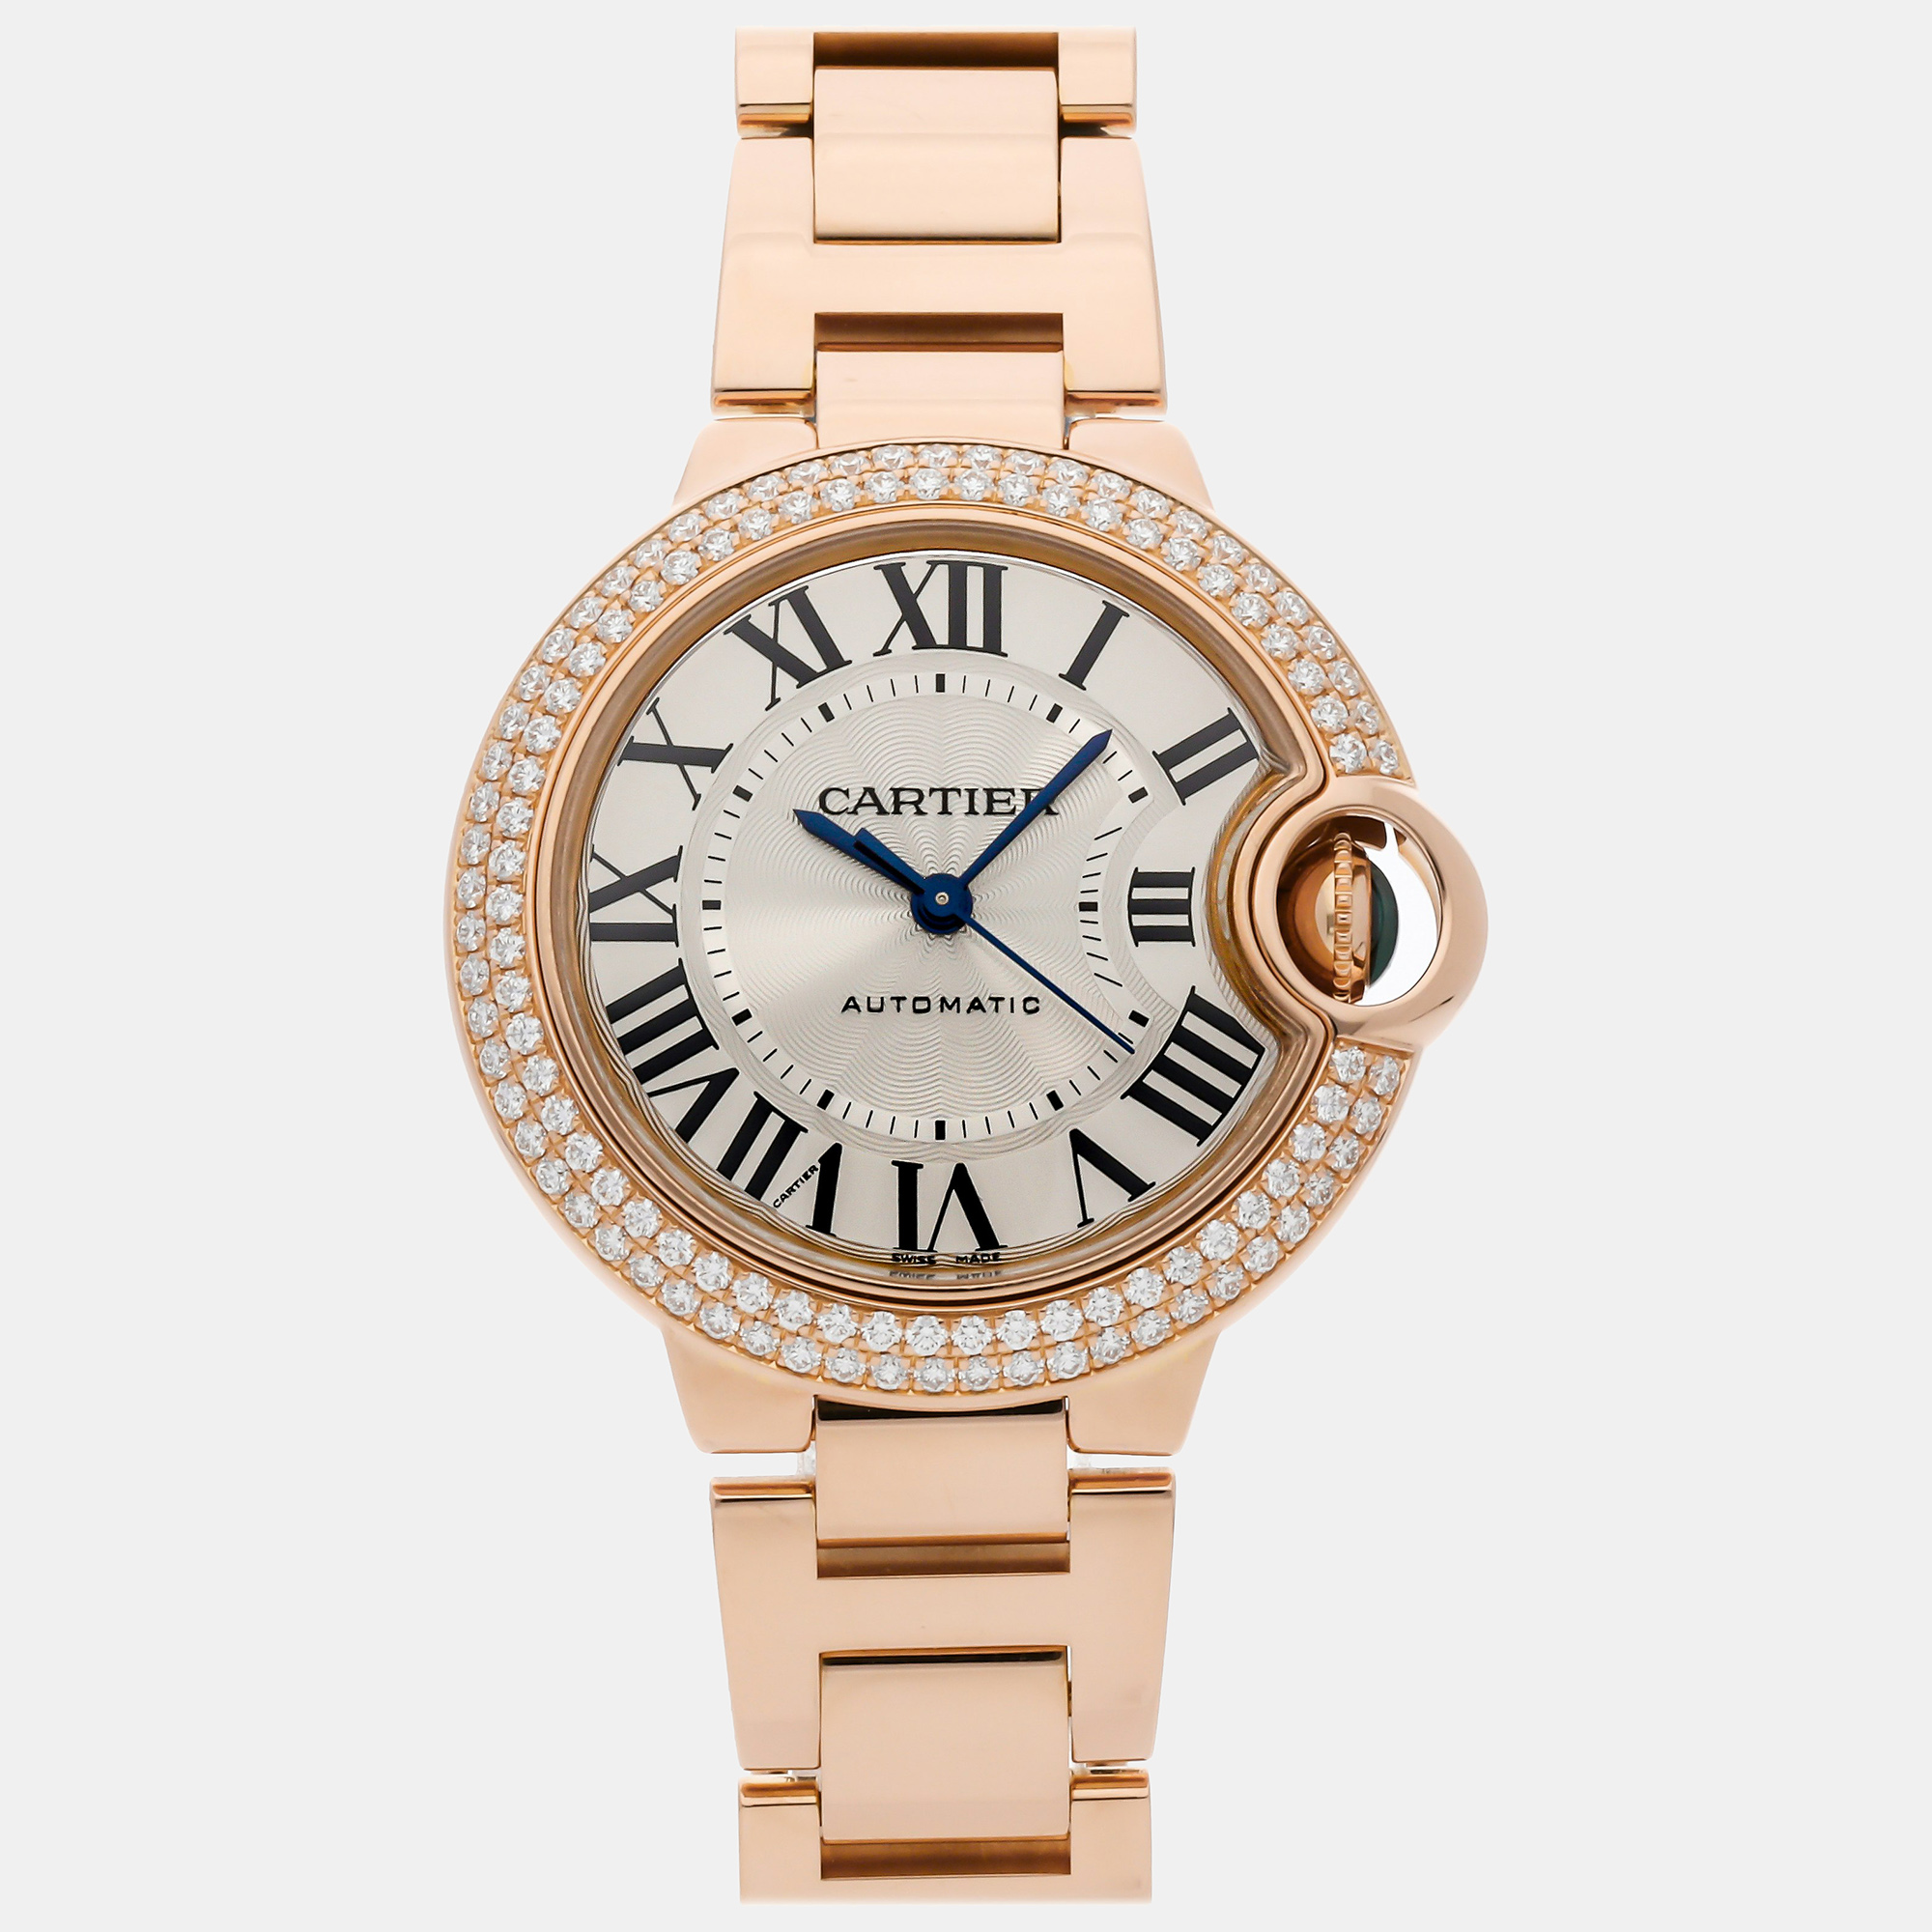 Cartier silver 18k rose gold ballon bleu we902064 automatic women's wristwatch 33 mm